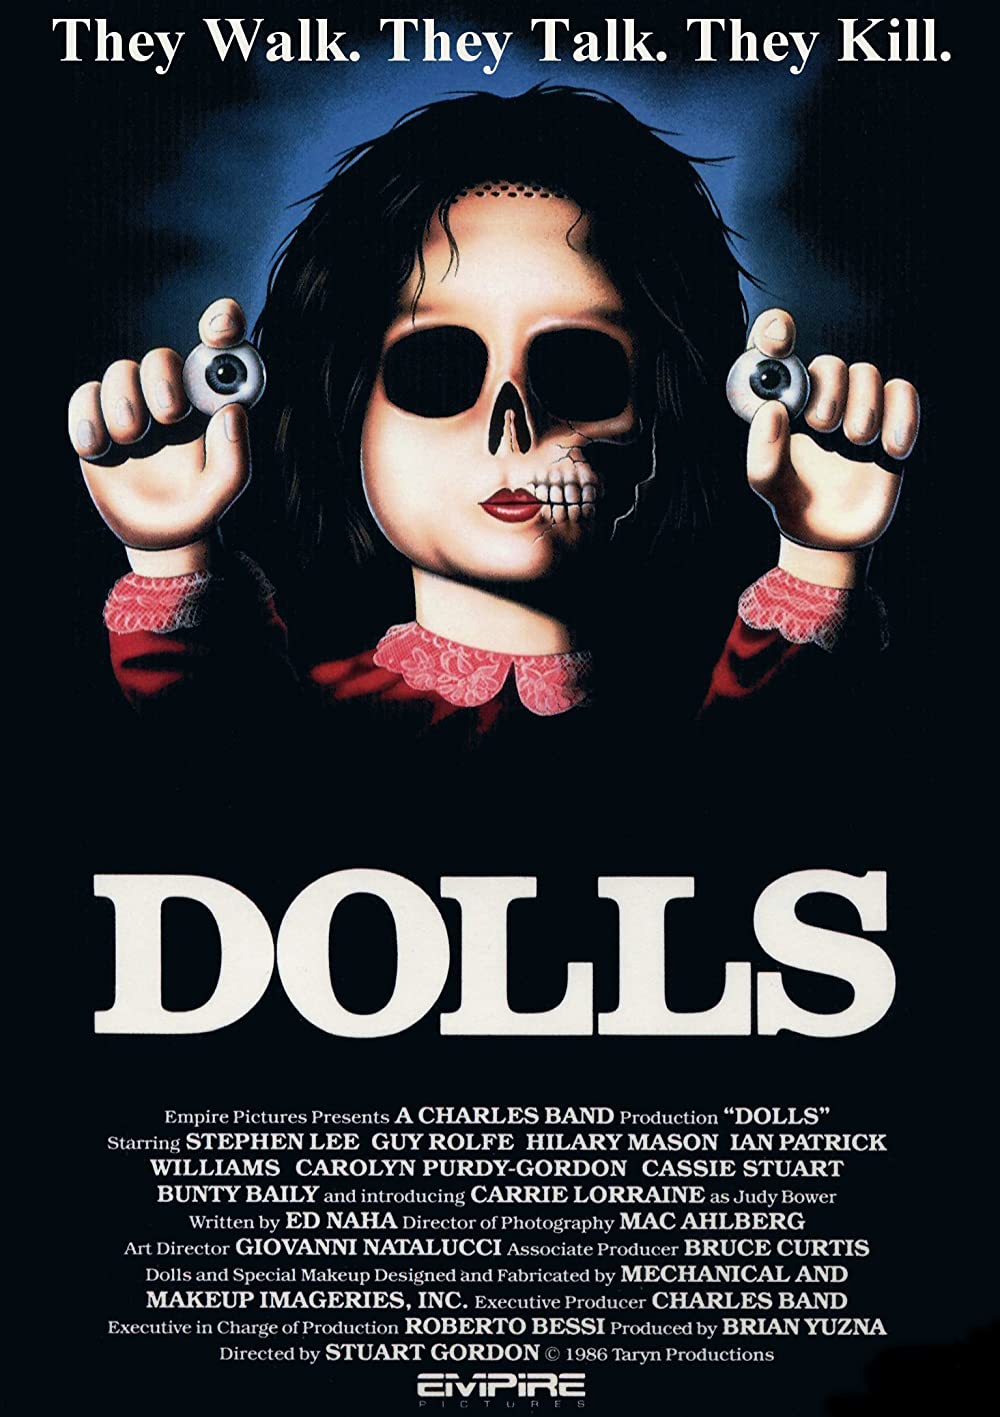 Filmbeschreibung zu Dolls